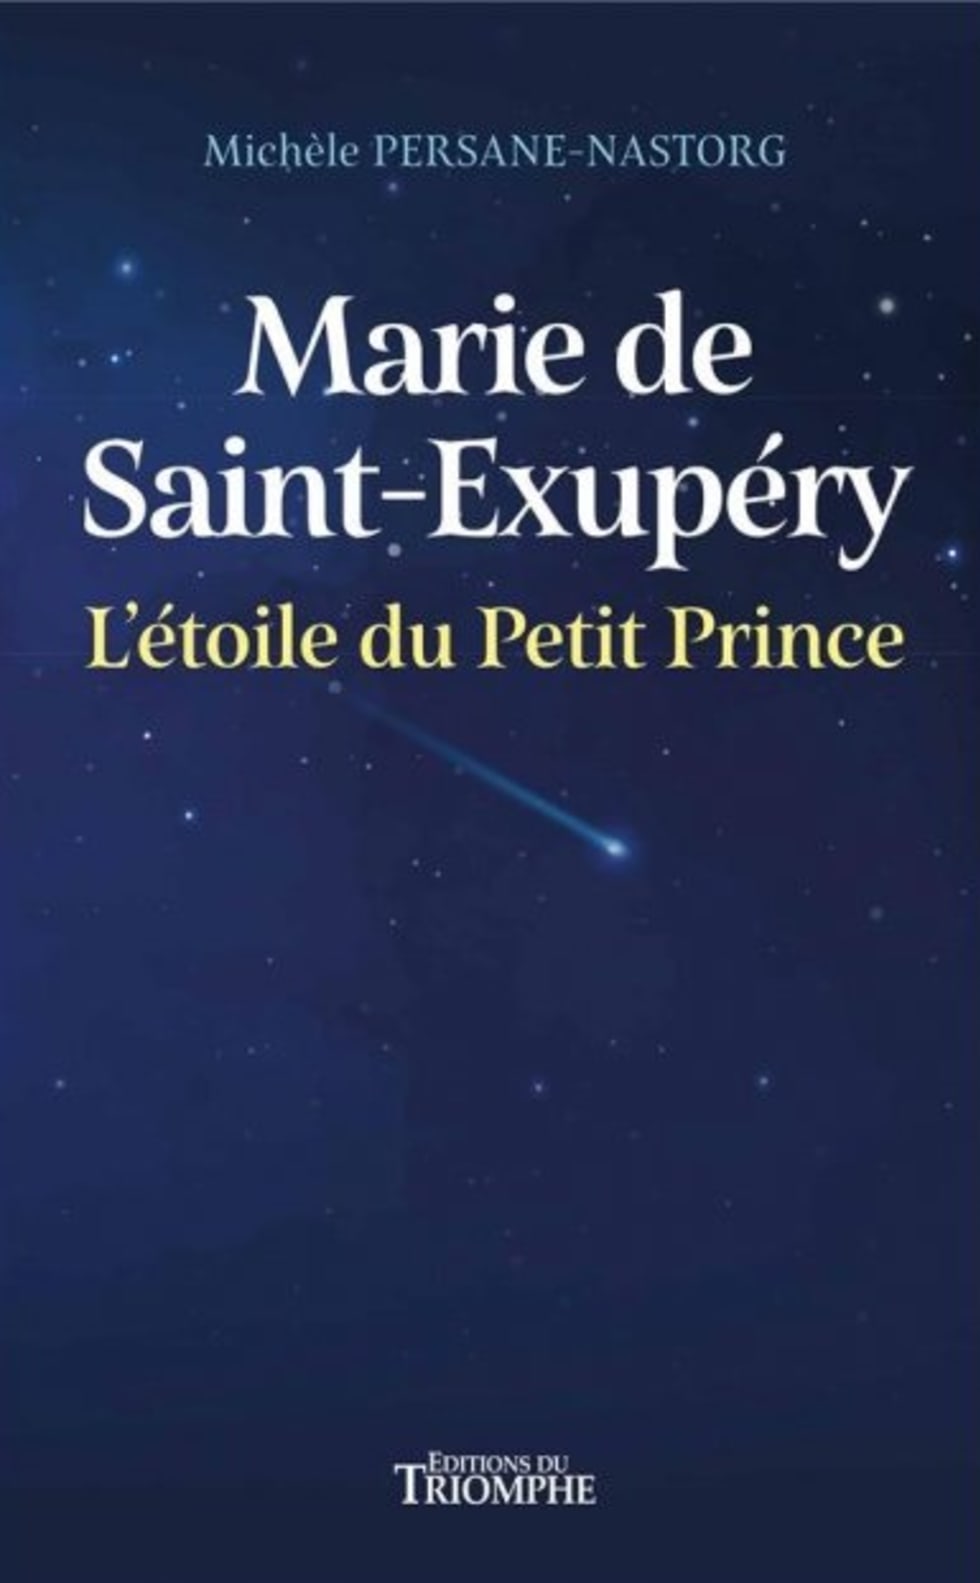 Le Petit Prince de Saint-Exupéry : une légende